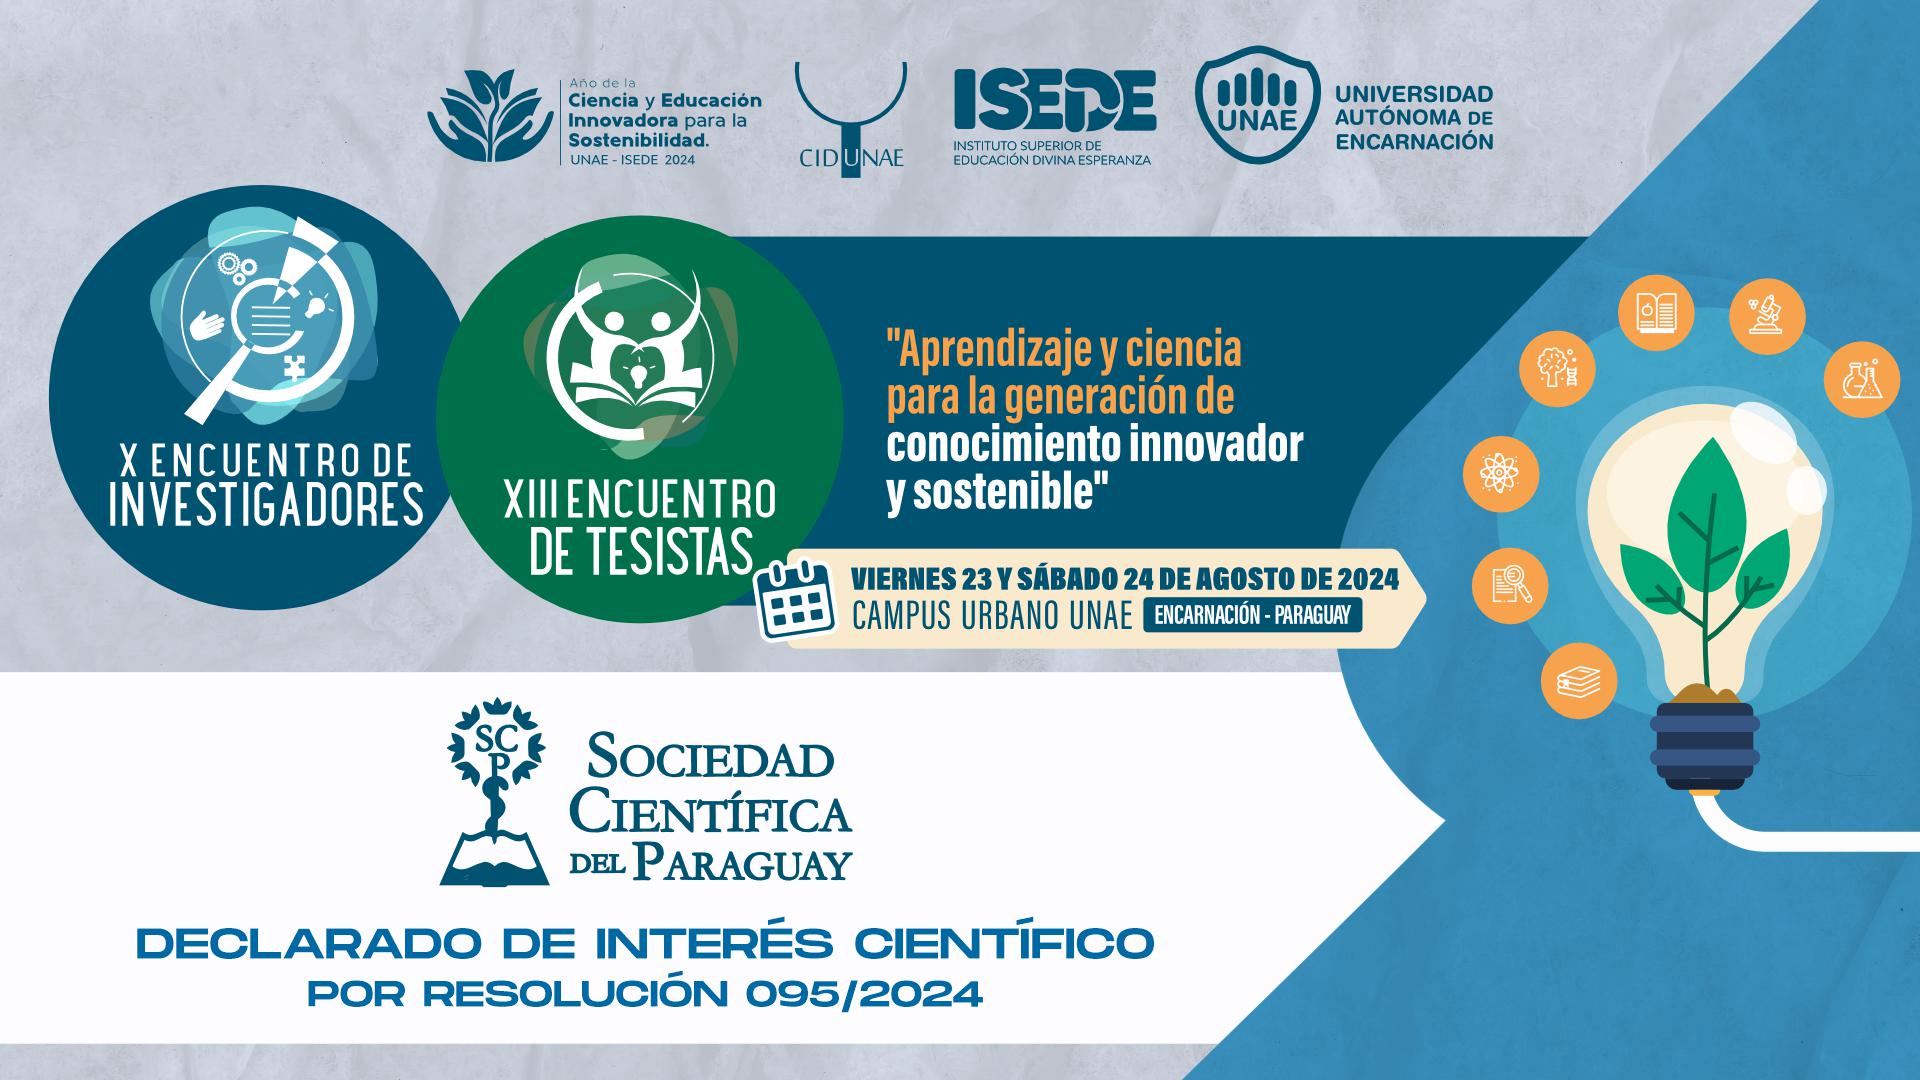 El X Encuentro de Investigadores y XIII Encuentro de Tesistas declarado de interés científico por la Sociedad Científica del Paraguay